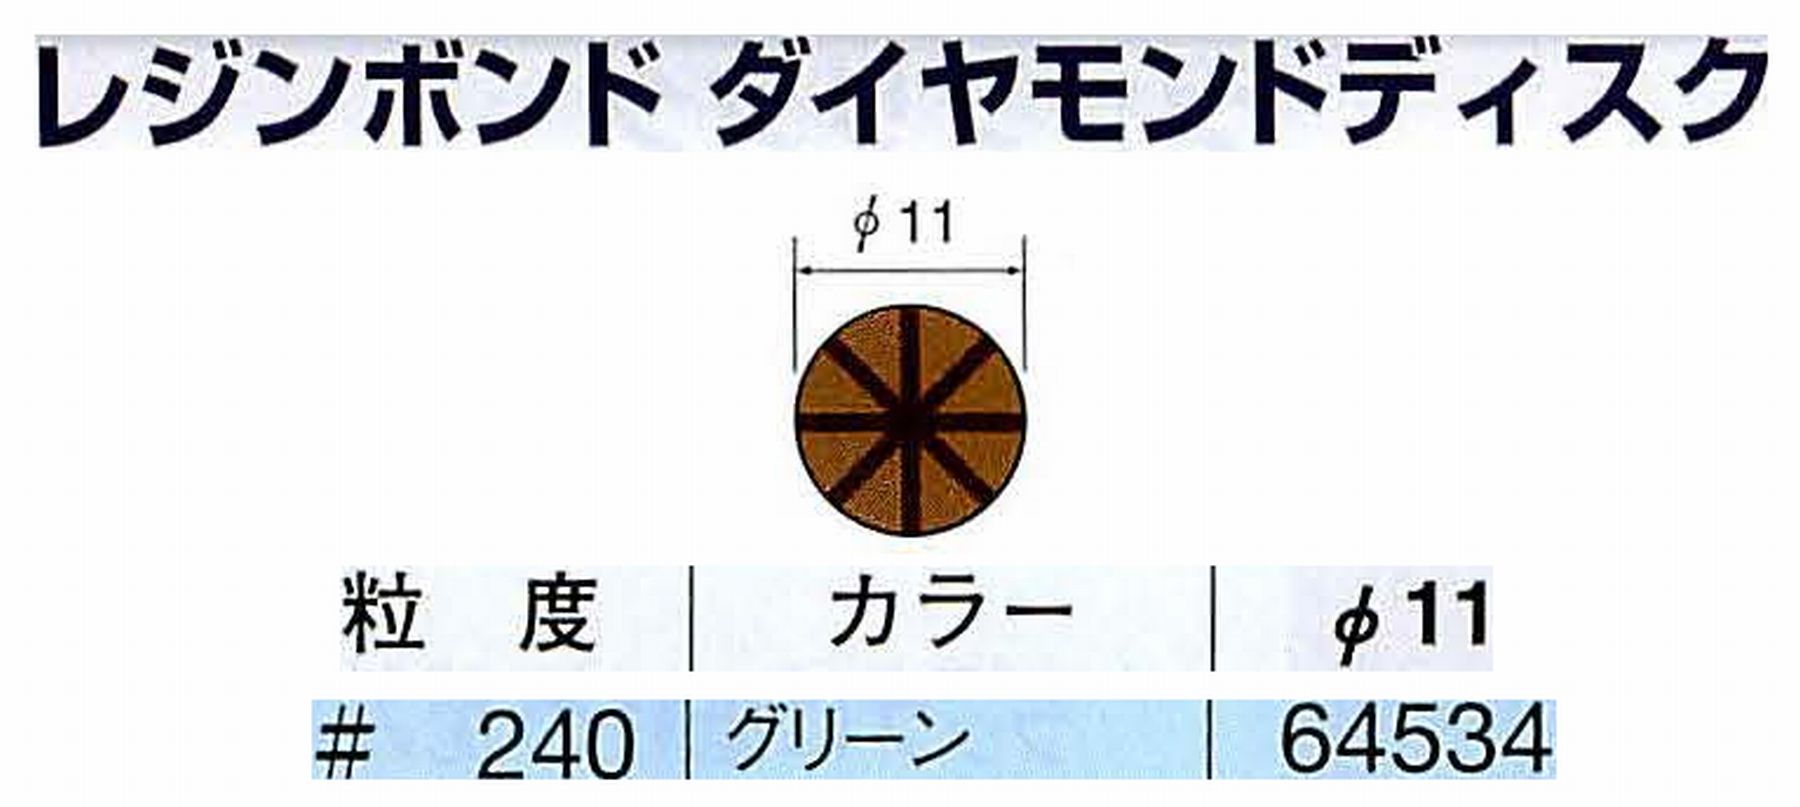 ナカニシ/NAKANISHI アングルグラインダ(電動・エアー) アングルアタッチメント専用工具 レジンボンド ダイヤモンドディスク(パターンタイプ) 64534